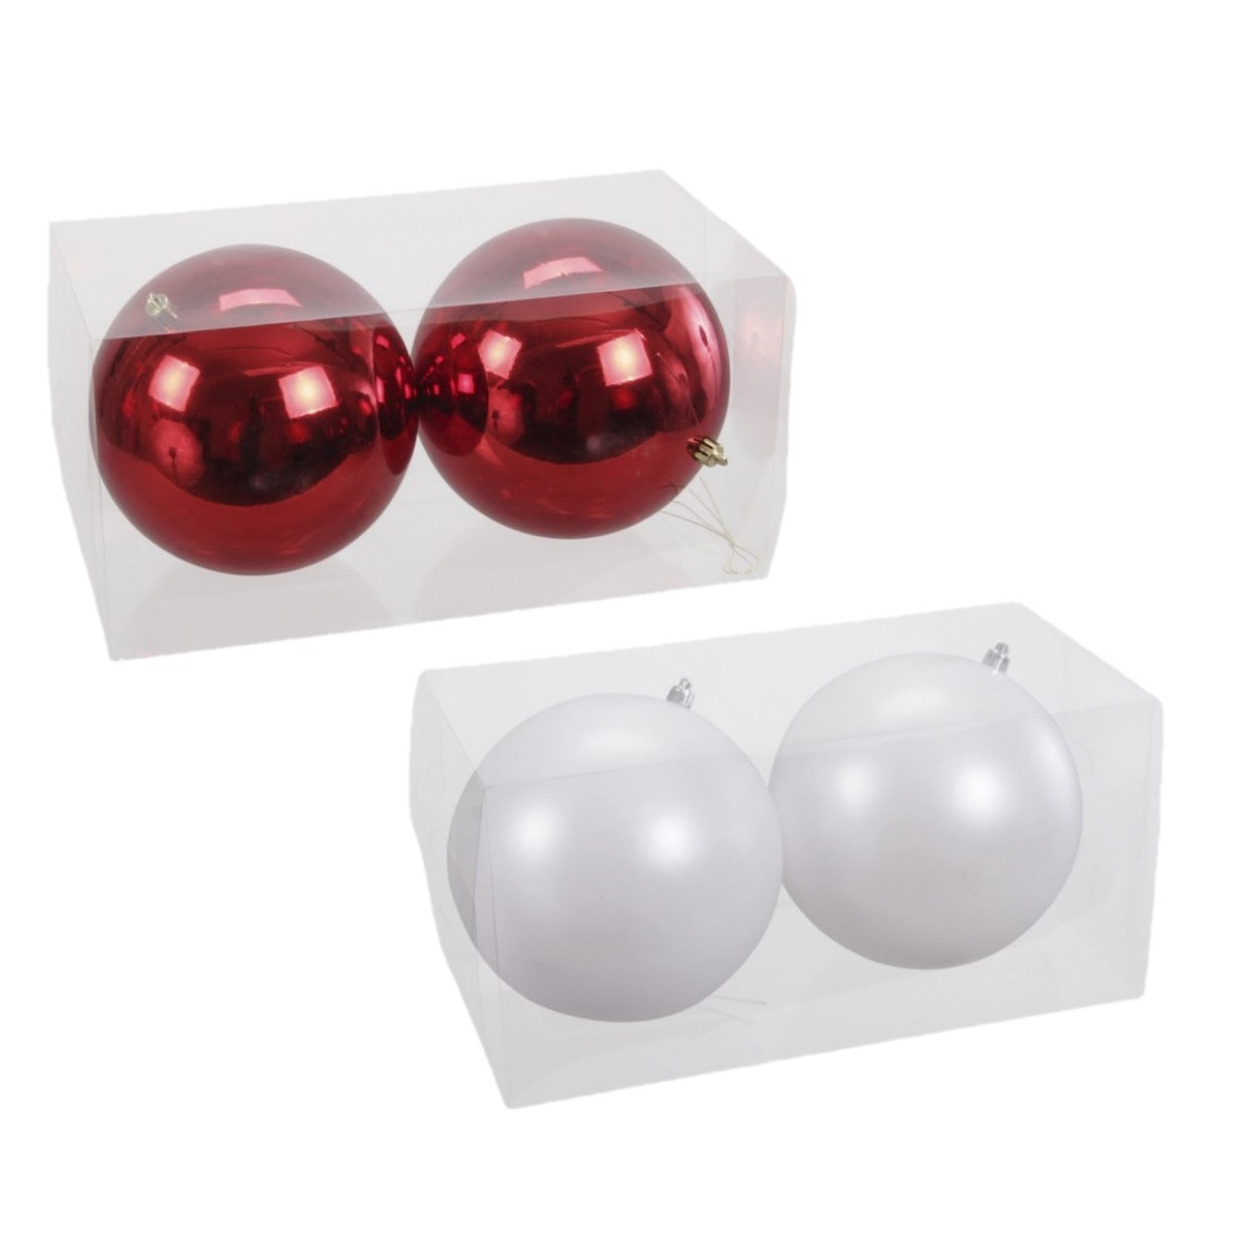 Kerstversieringen set van 4x grote kunststof kerstballen rood en wit 15 cm glans - 2x stuks per kleur